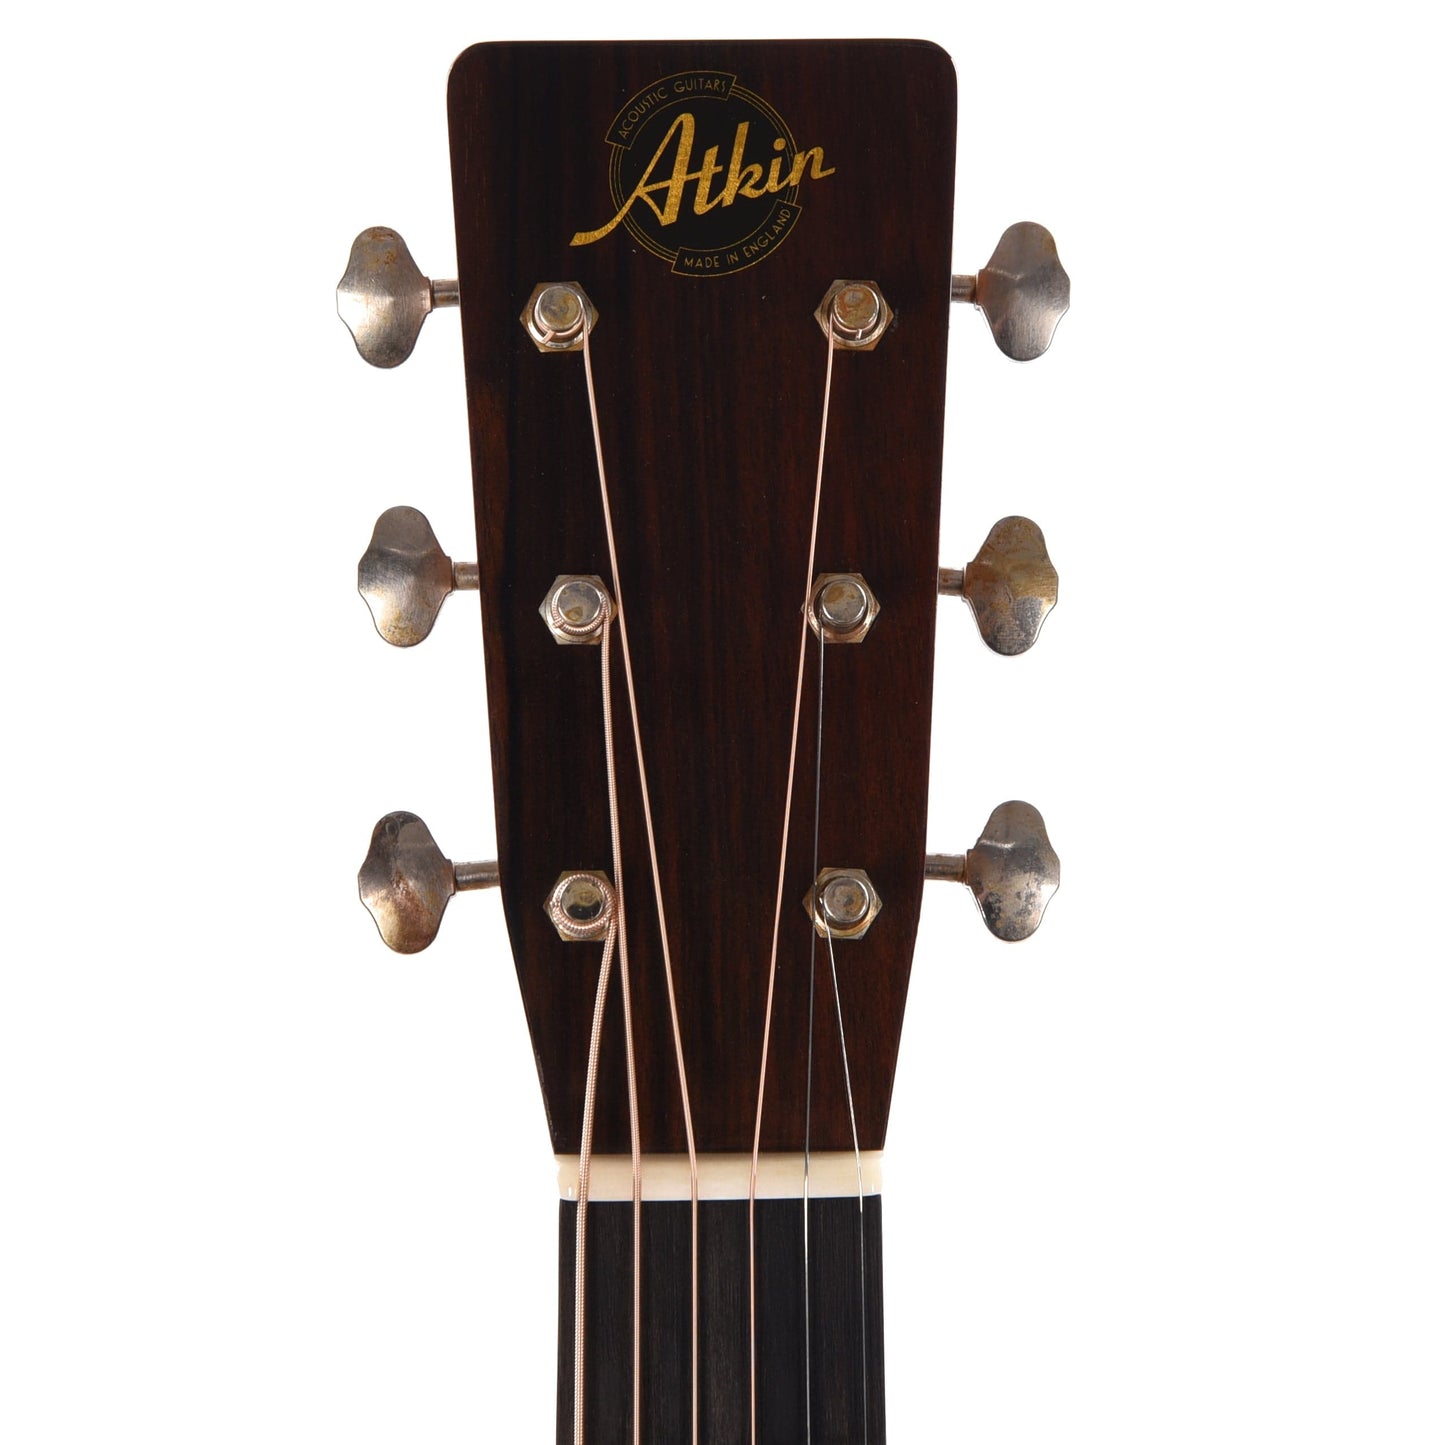 Atkin OM37 Aged Baked Sitka/Rosewood Sunburst Acoustic Guitars / OM and Auditorium